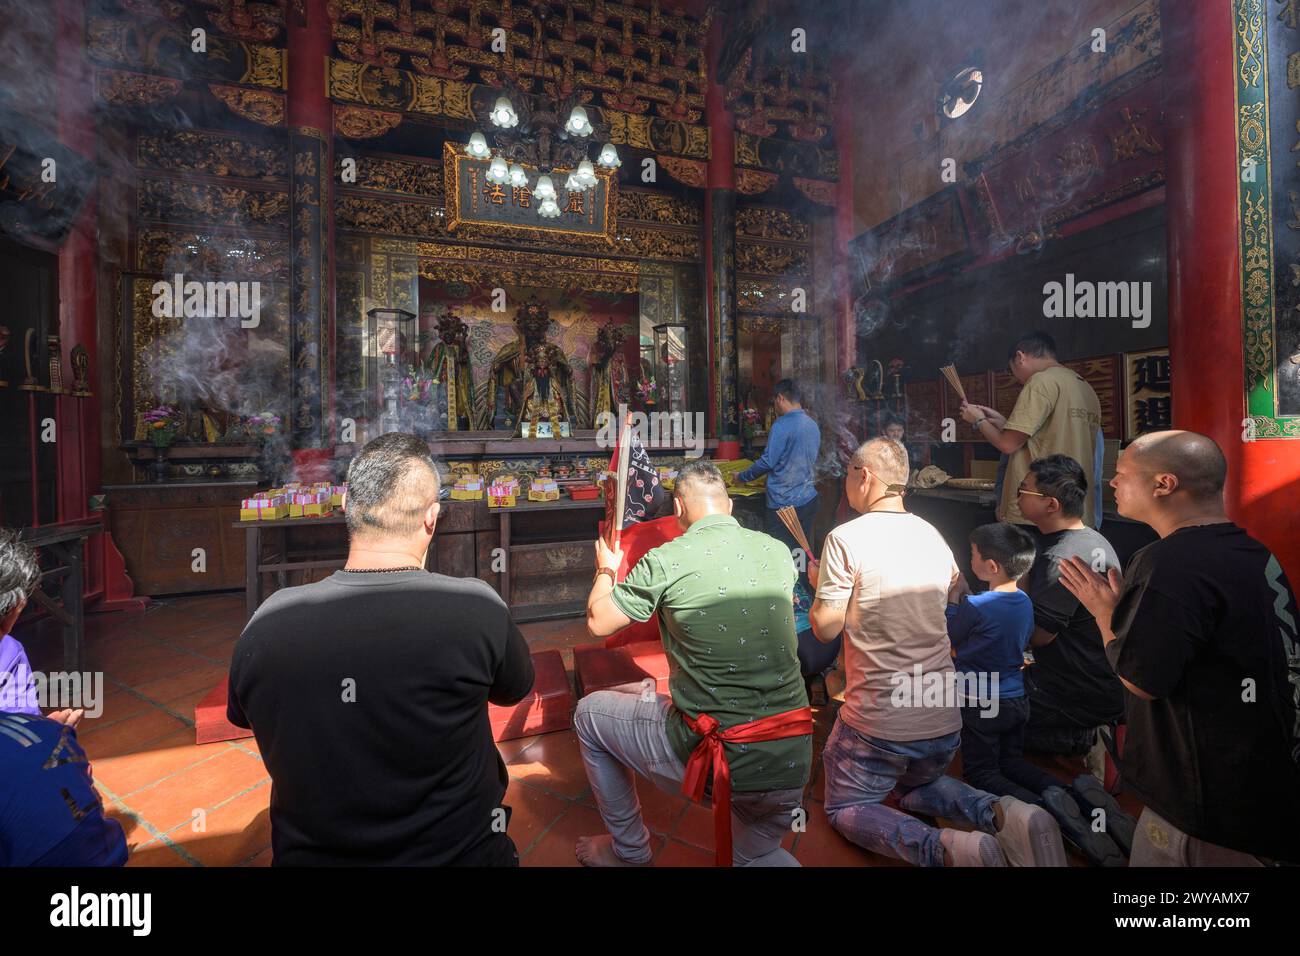 Les adorateurs allument de l'encens et prient dans l'intérieur fumé d'un temple traditionnel Banque D'Images